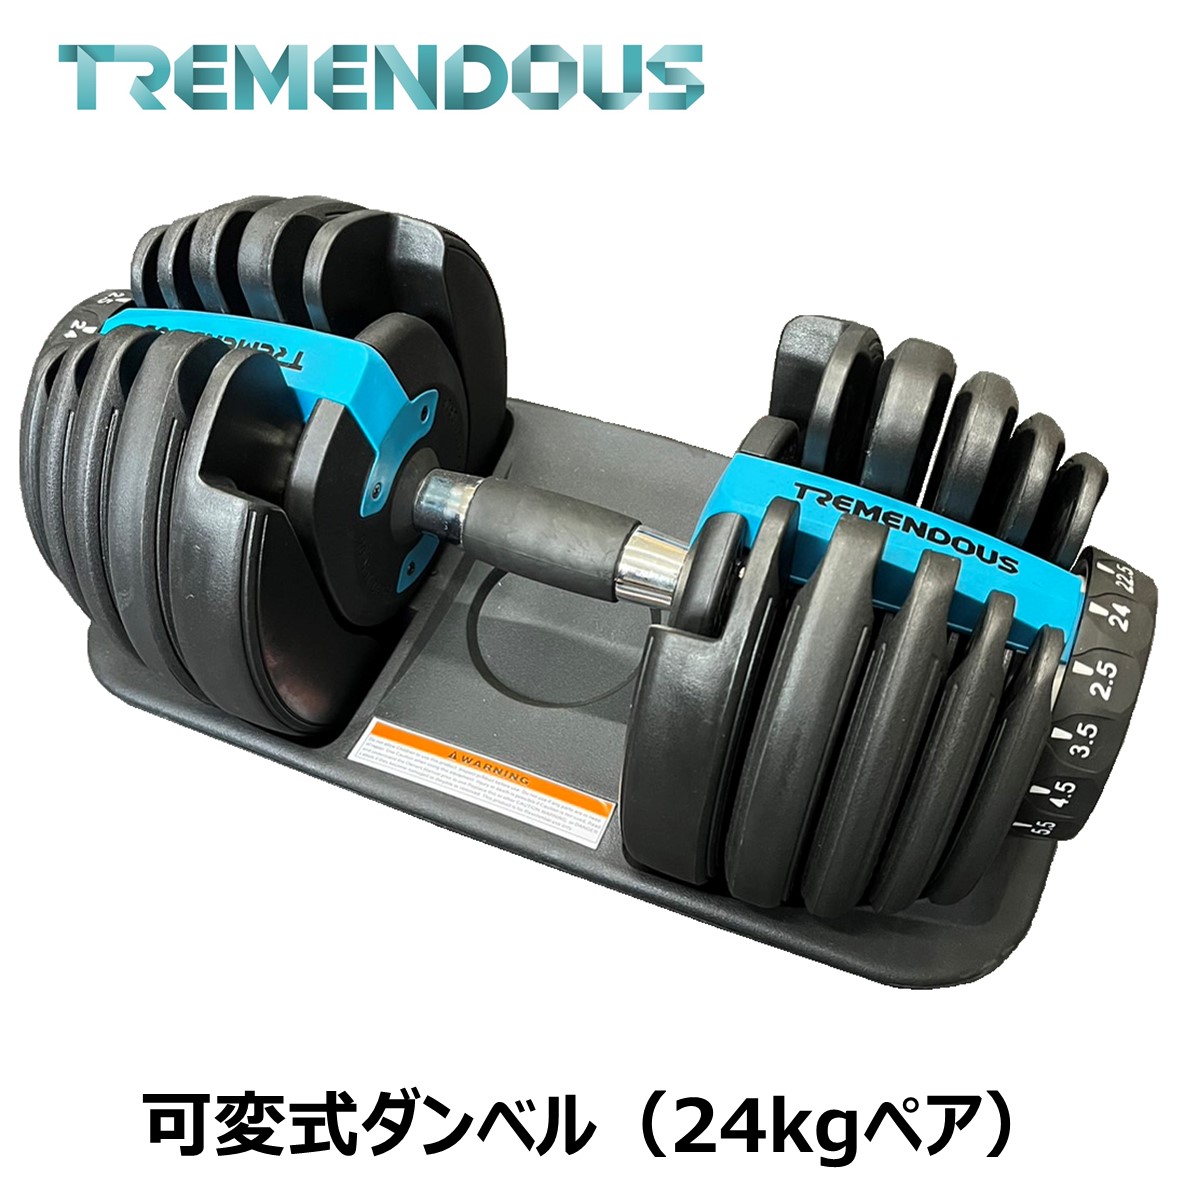 [TREMENDOUS] 可変式ダンベル 24kg 2個セット 筋トレ 胸筋 腕トレ 上腕二頭筋 ダンベルプレス アジャスタブルダンベル ダイエット ボディメイクのサムネイル